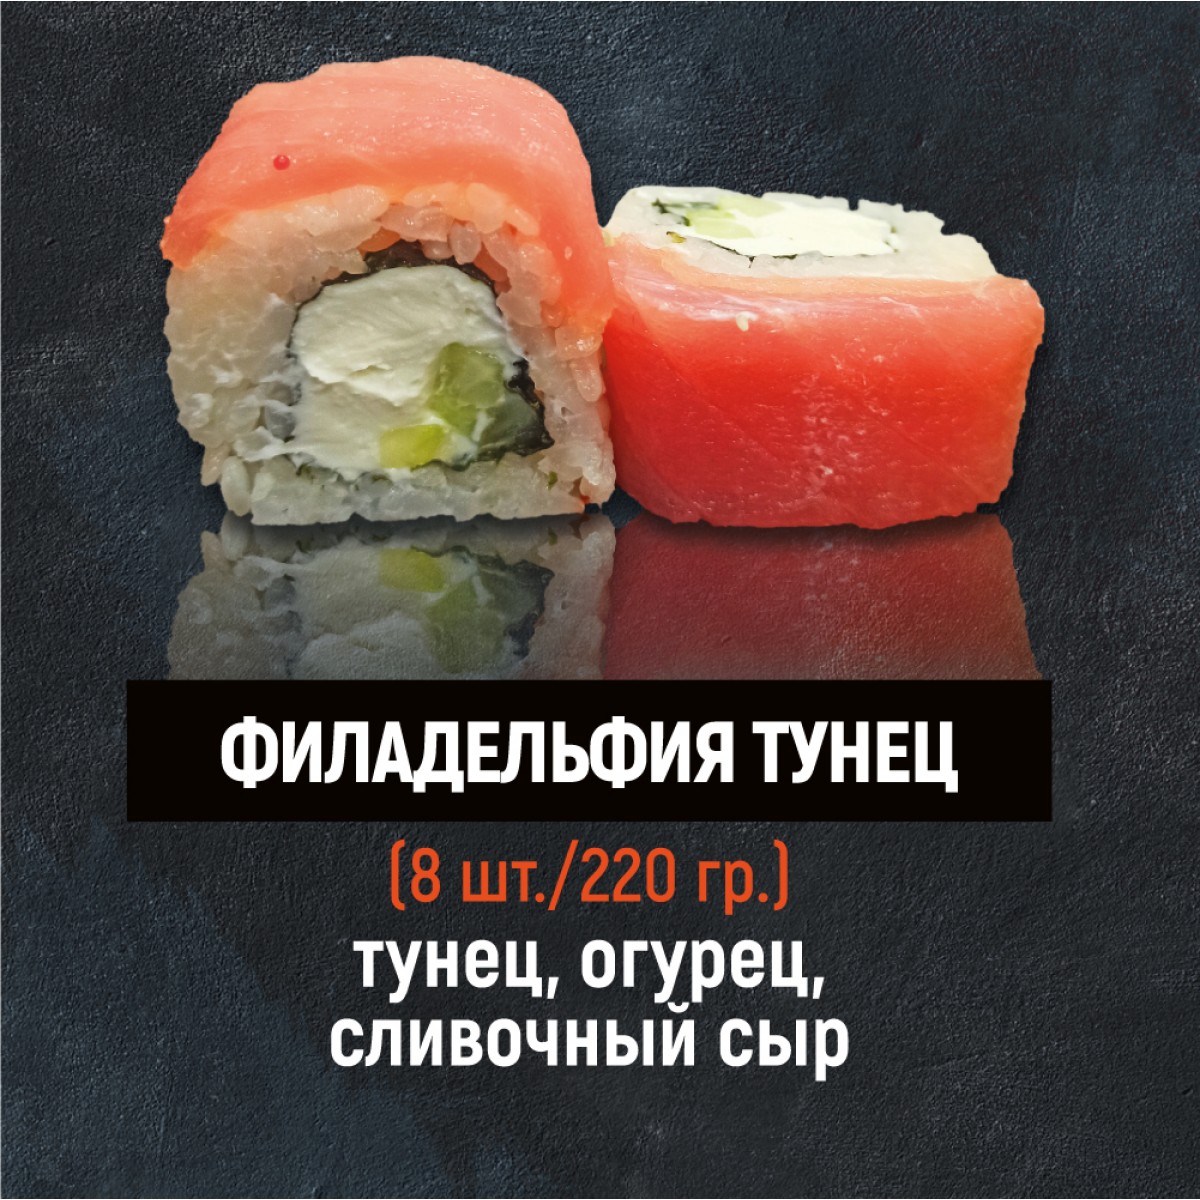 Заказать суши в сургуте с доставкой джонни тунец фото 73